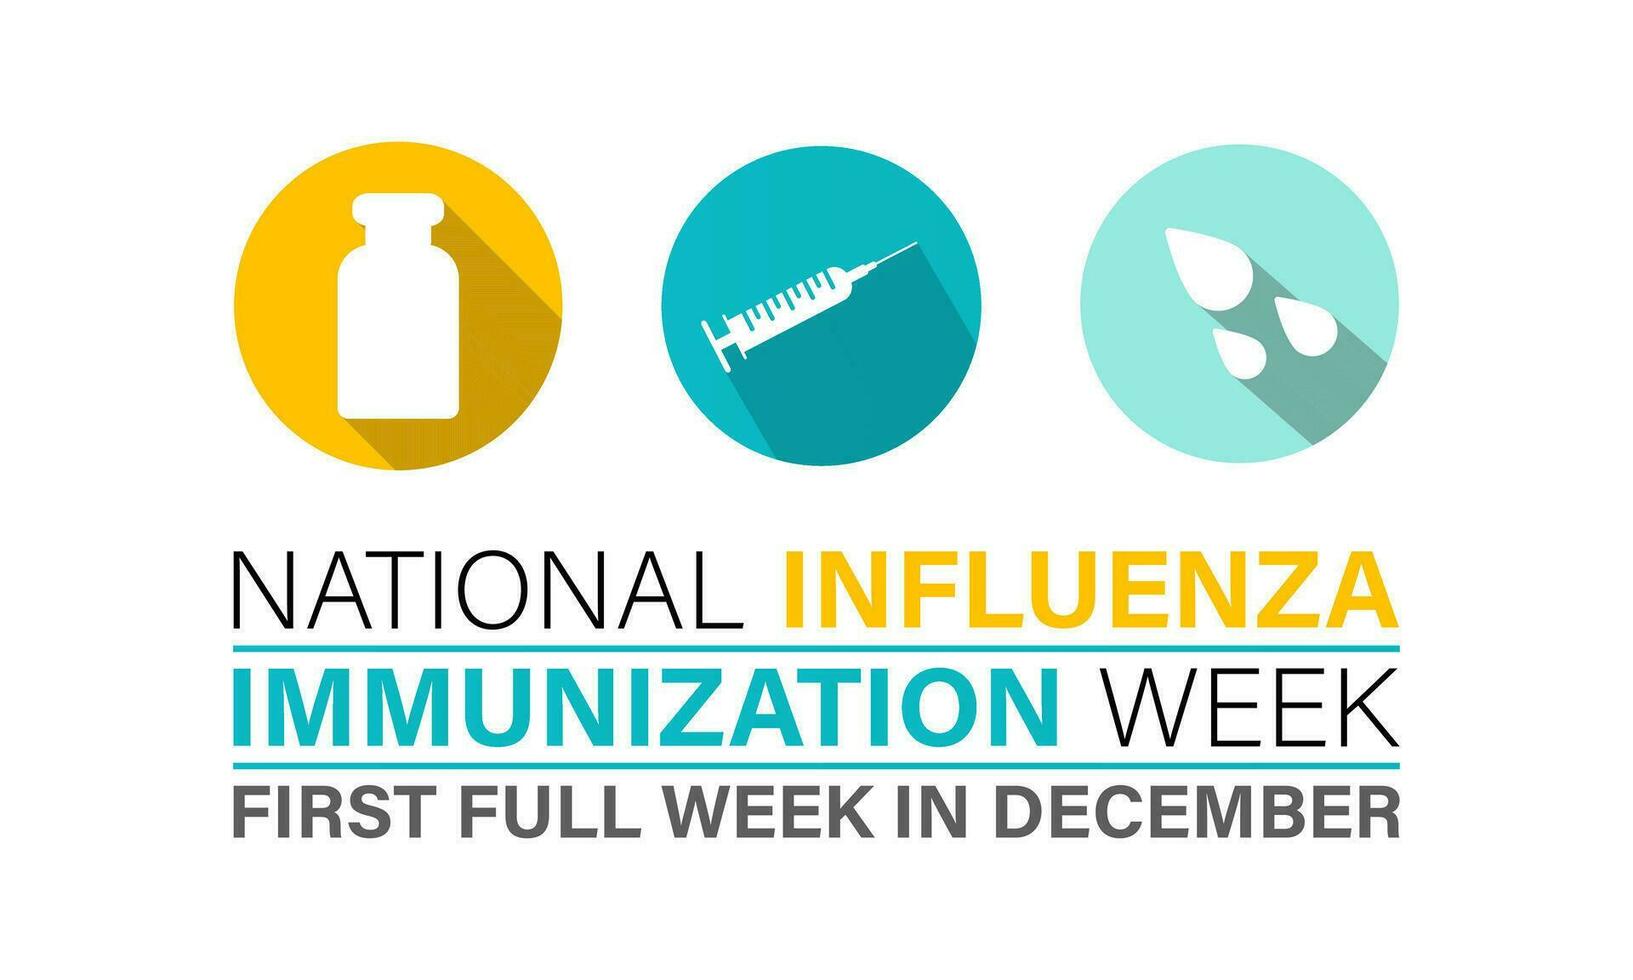 nationale grippe vaccination la semaine de décembre 1er à 7ème.. plat conception. prospectus conception. arrière-plan, bannière, carte, affiche, modèle. vecteur illustration